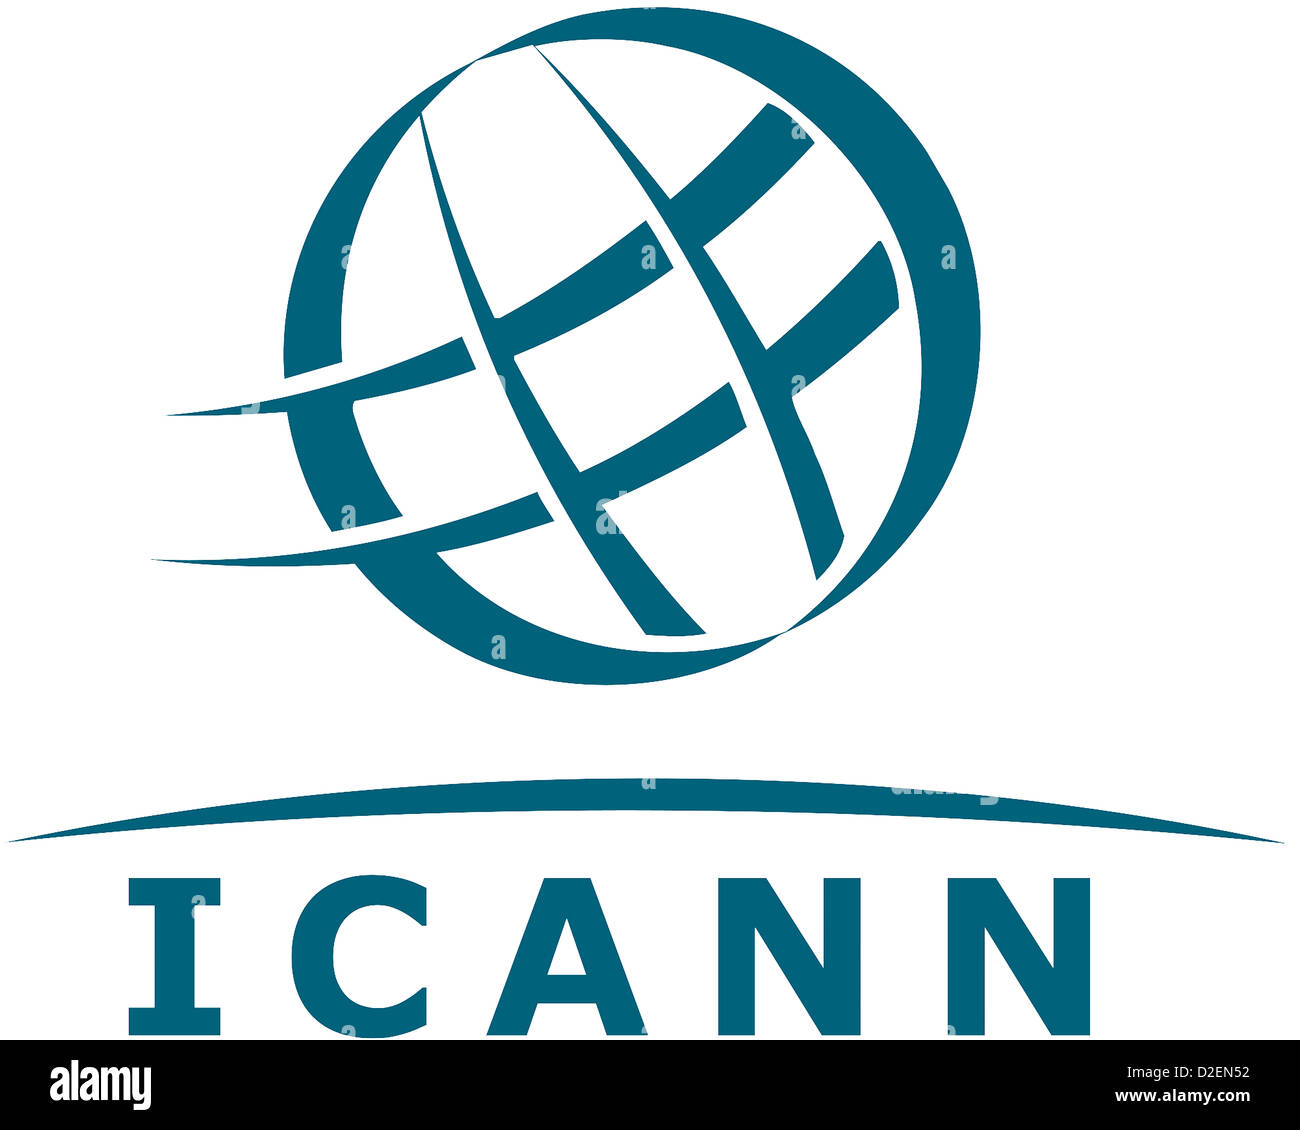 L'emblème de l'Internet Corporation for Assigned Names and Numbers ICANN avec siège en Californie. Banque D'Images